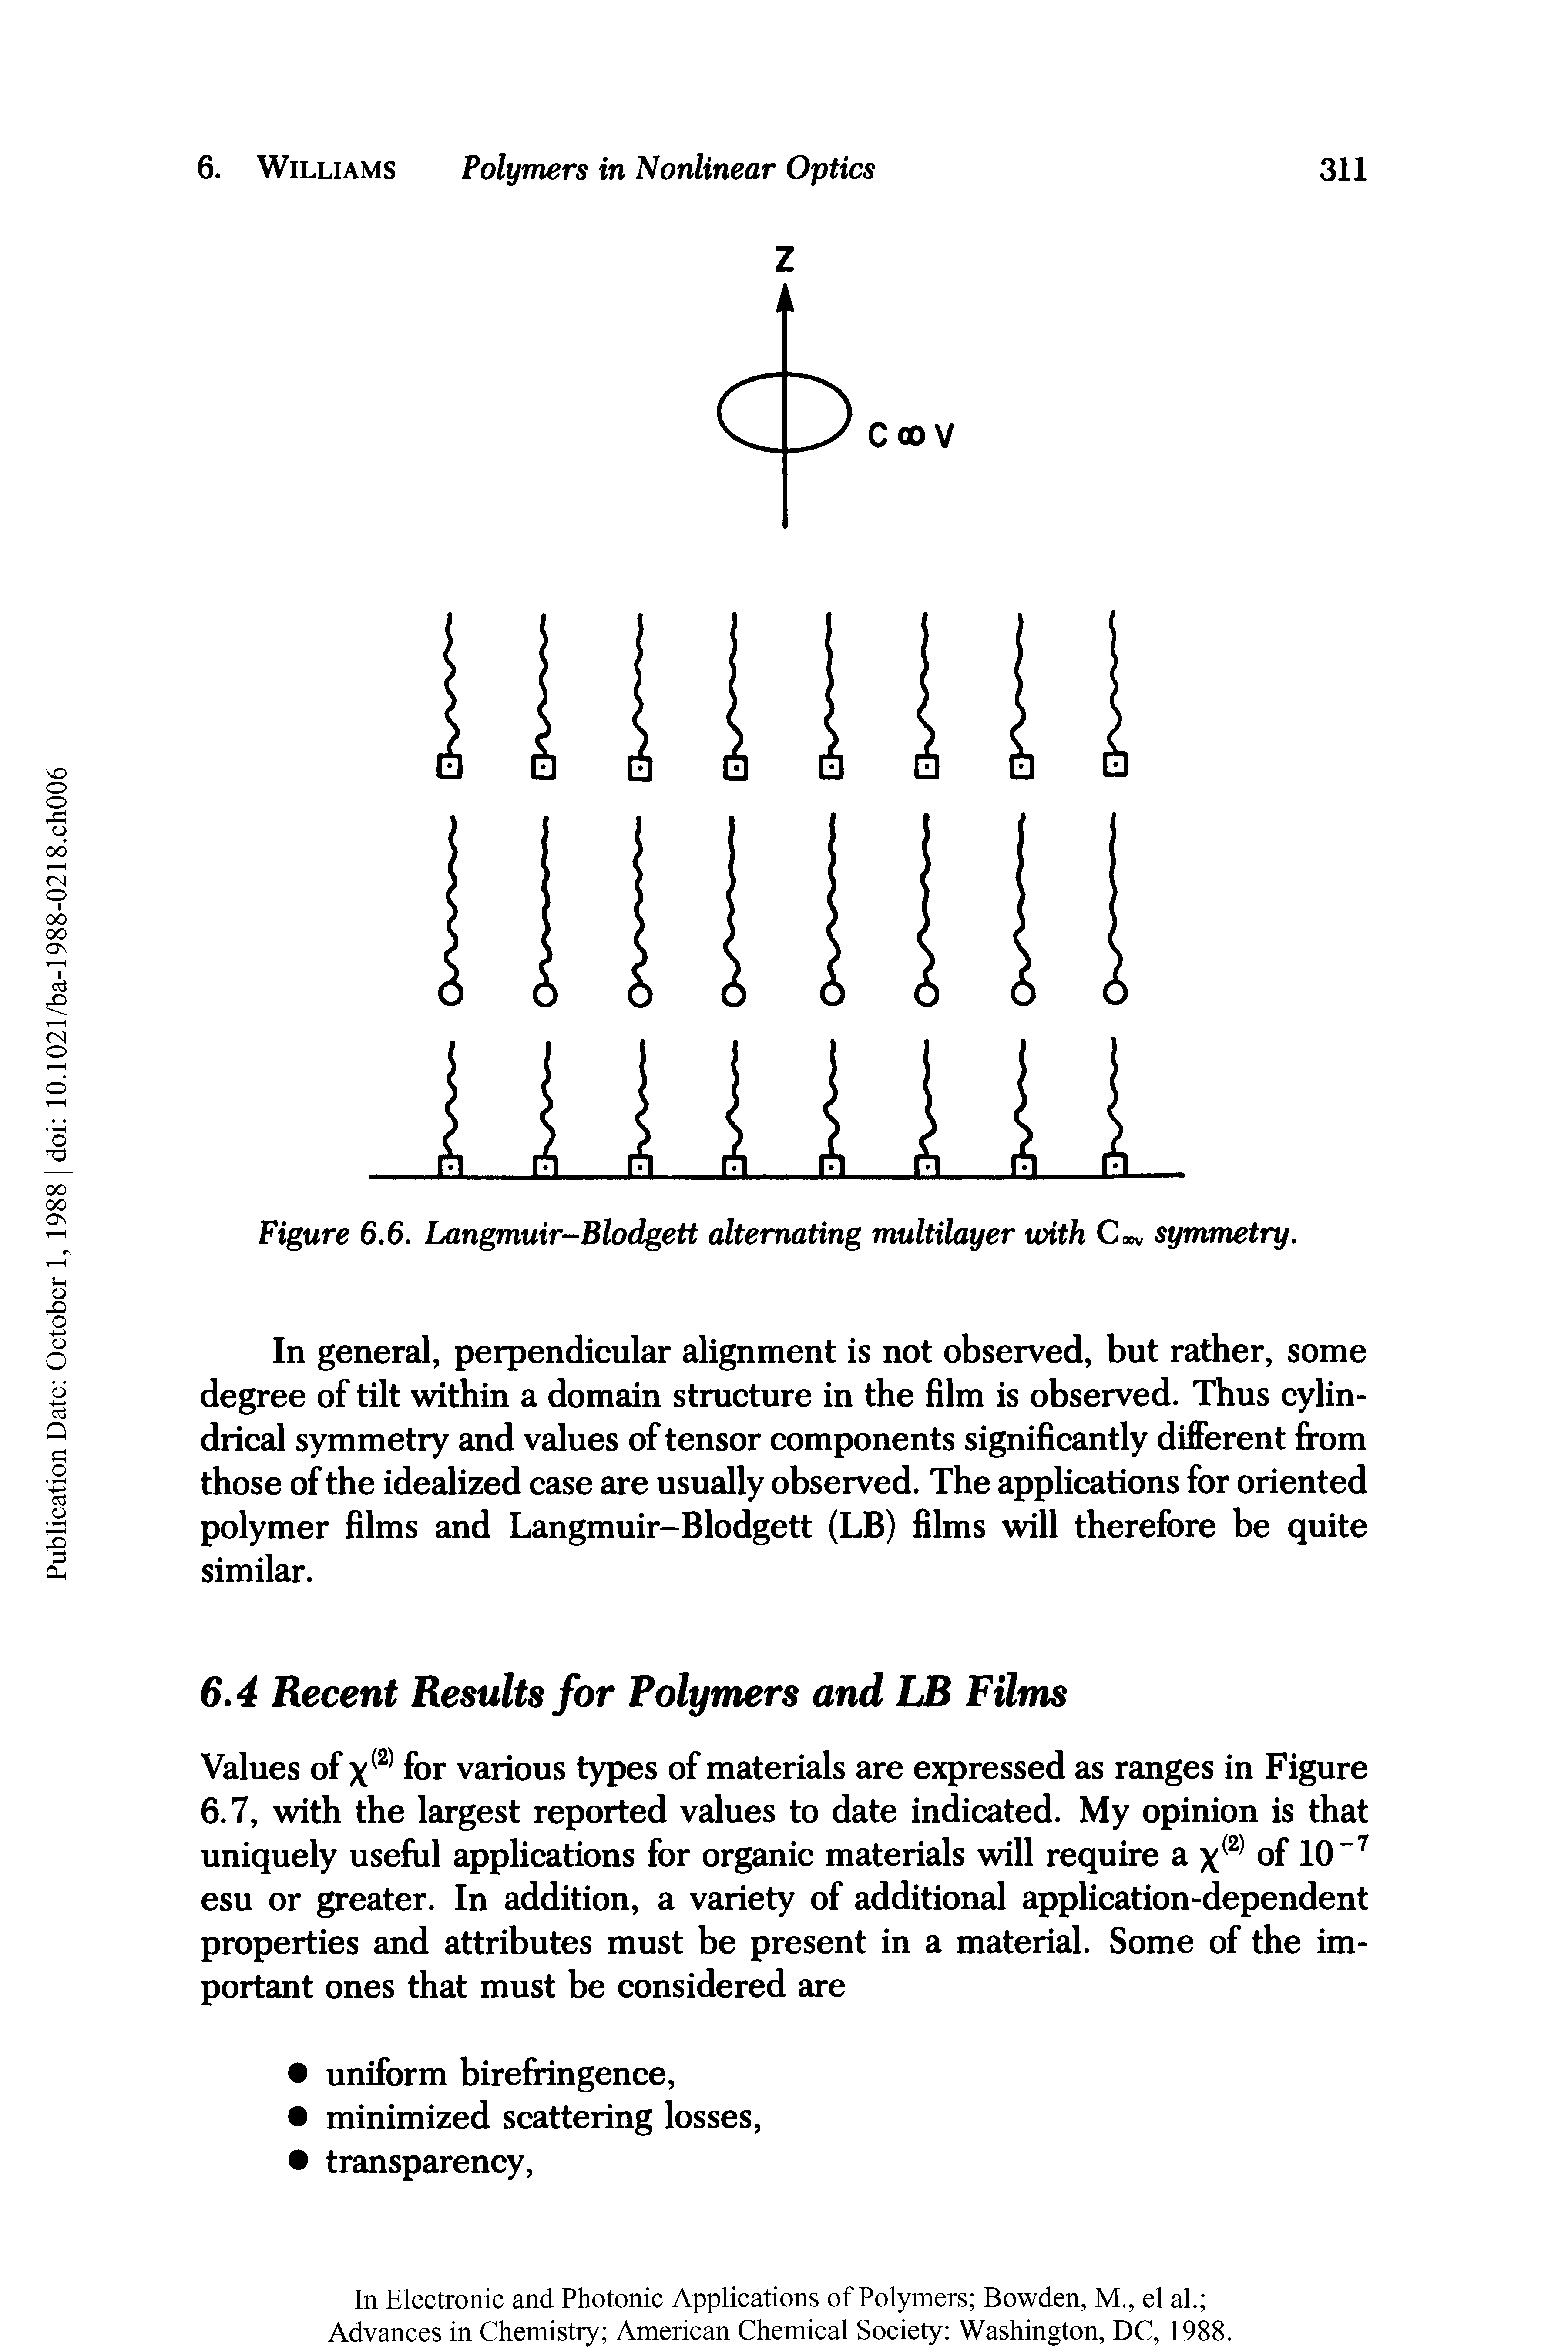 Figure 6.6. Langmuir-Blodgett alternating multilayer with C v symmetry.